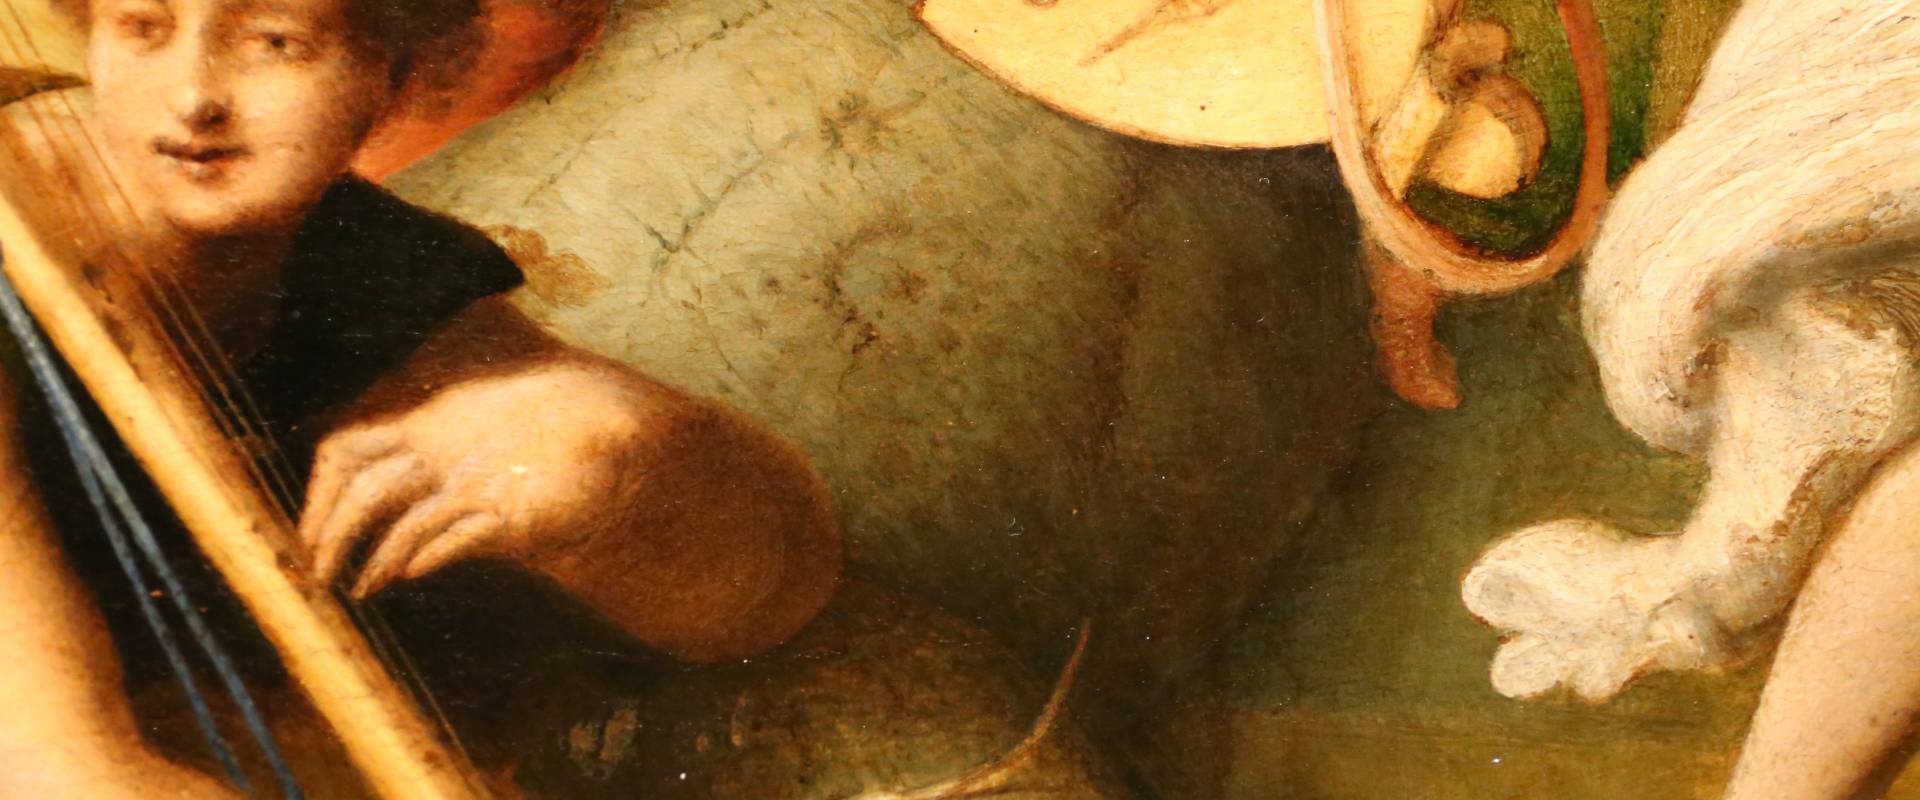 Piero di cosimo, perseo libera andromeda, 1510-13 (uffizi) 14 photo by Sailko